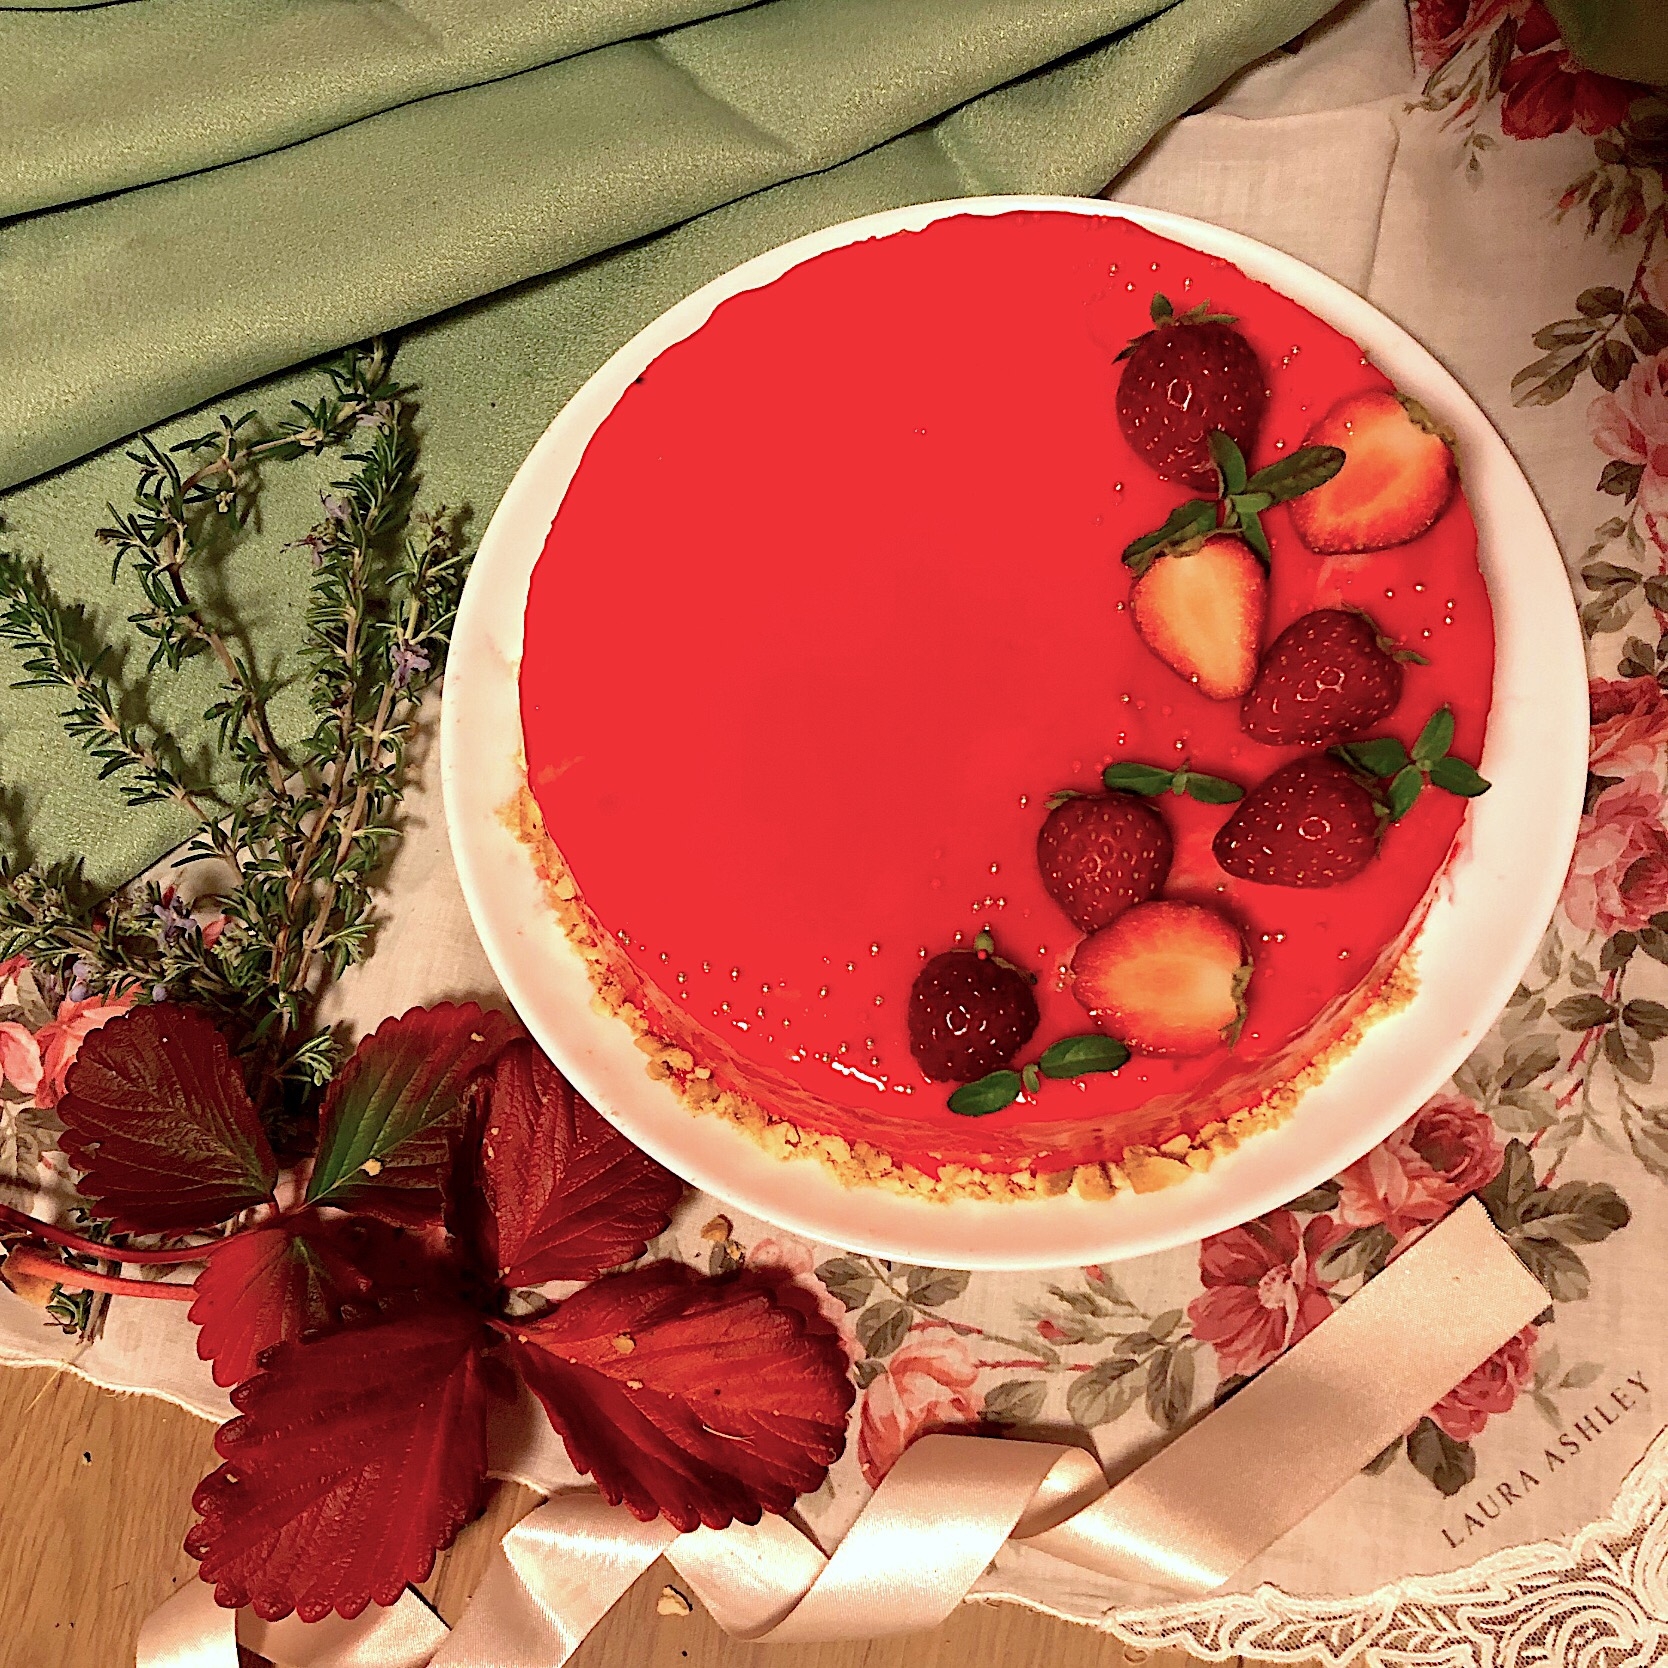 白いお皿に乗った真っ赤なミラーケーキ